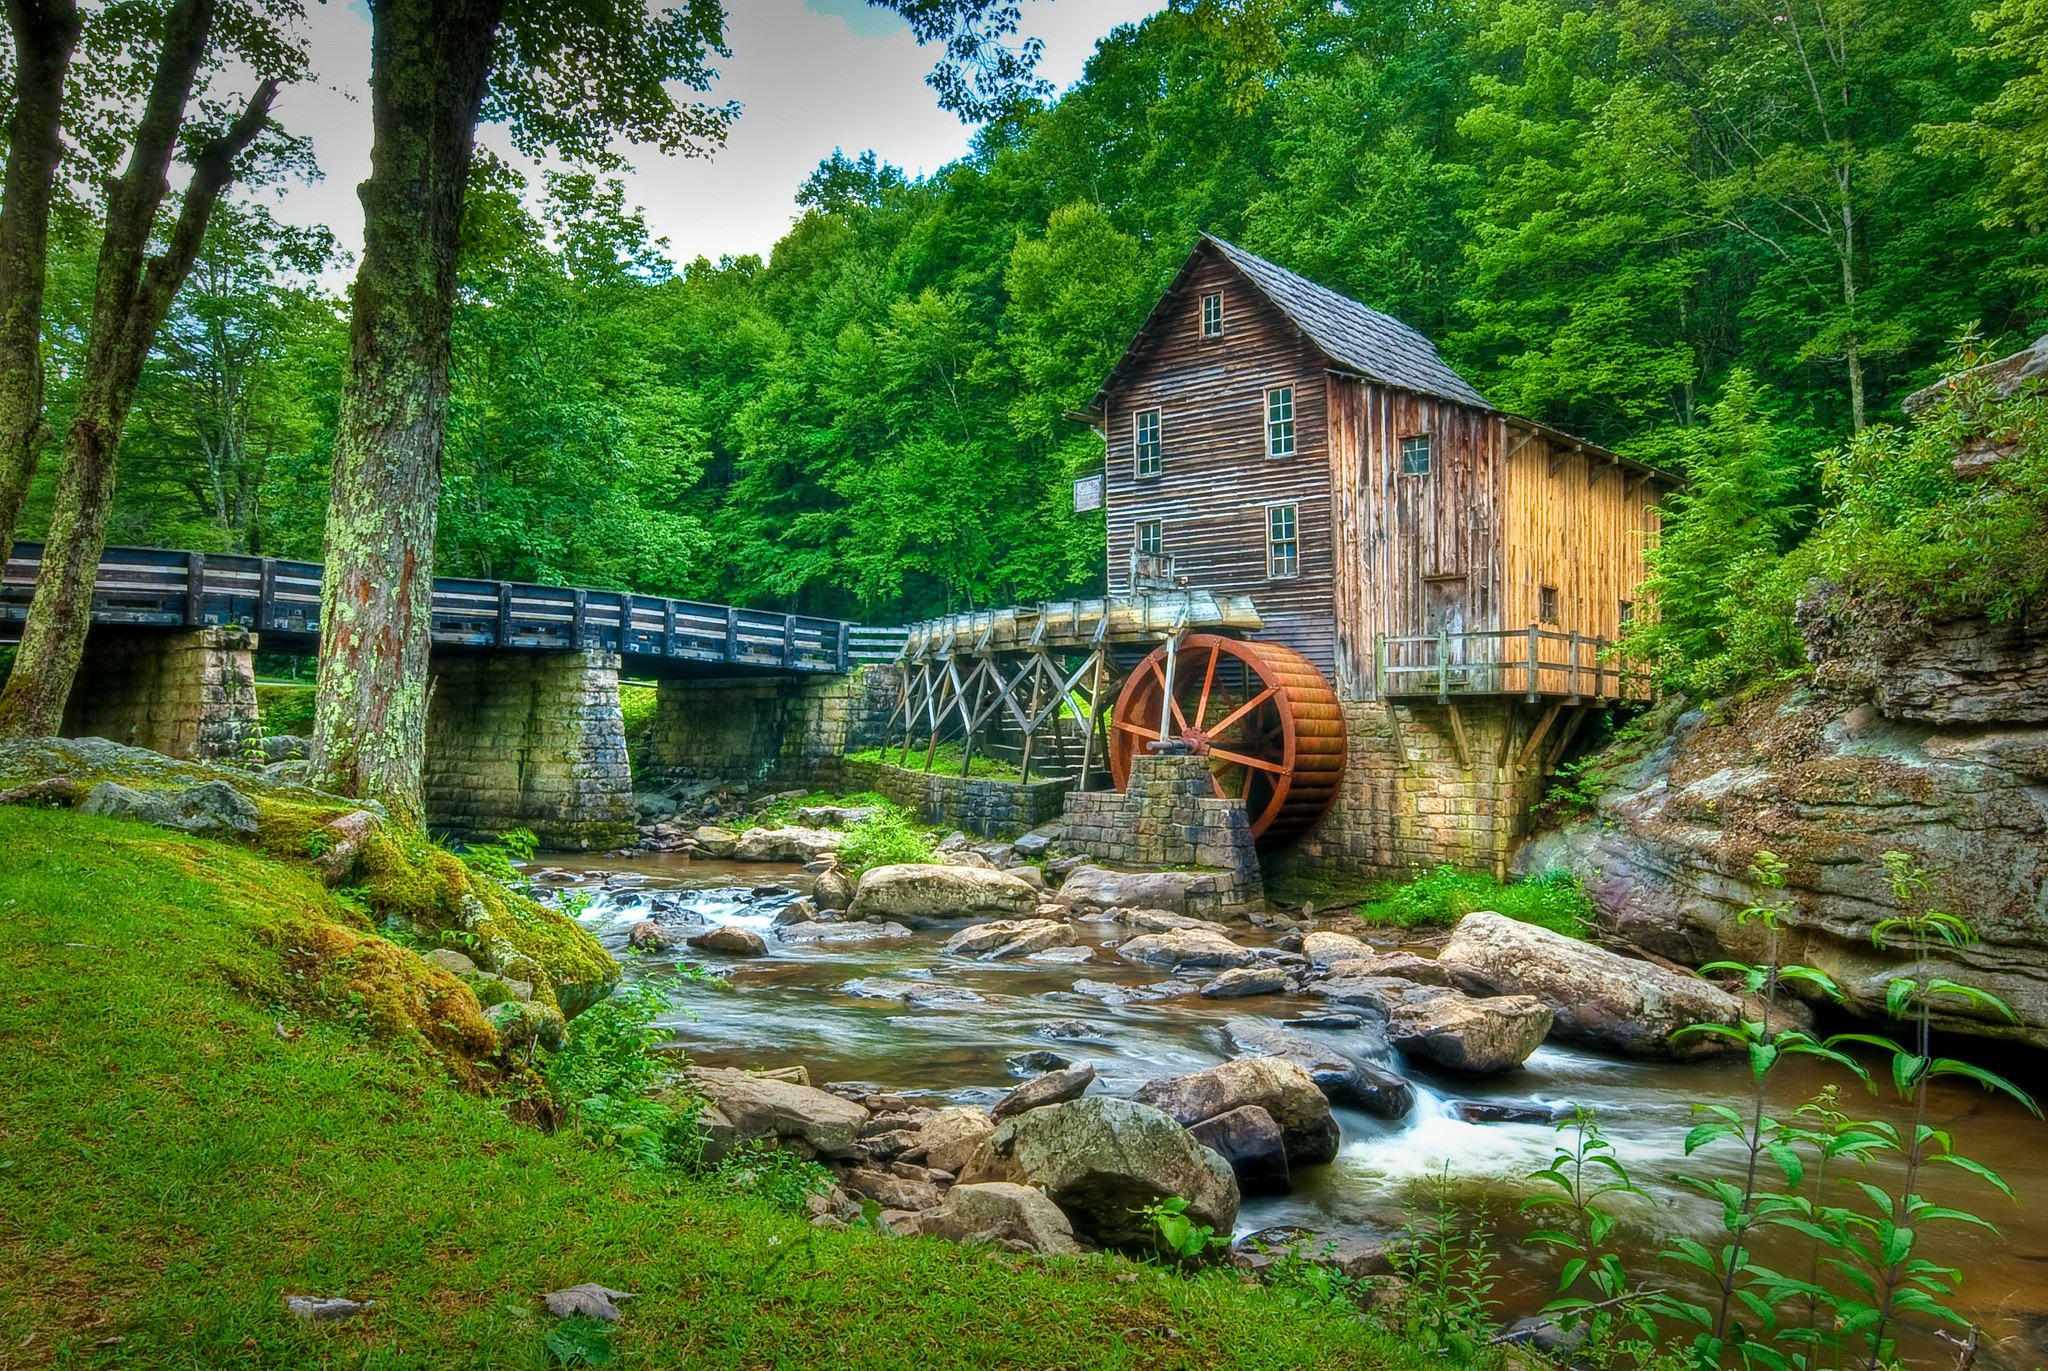 General 2048x1371 watermills bridge outdoors creeks building trees